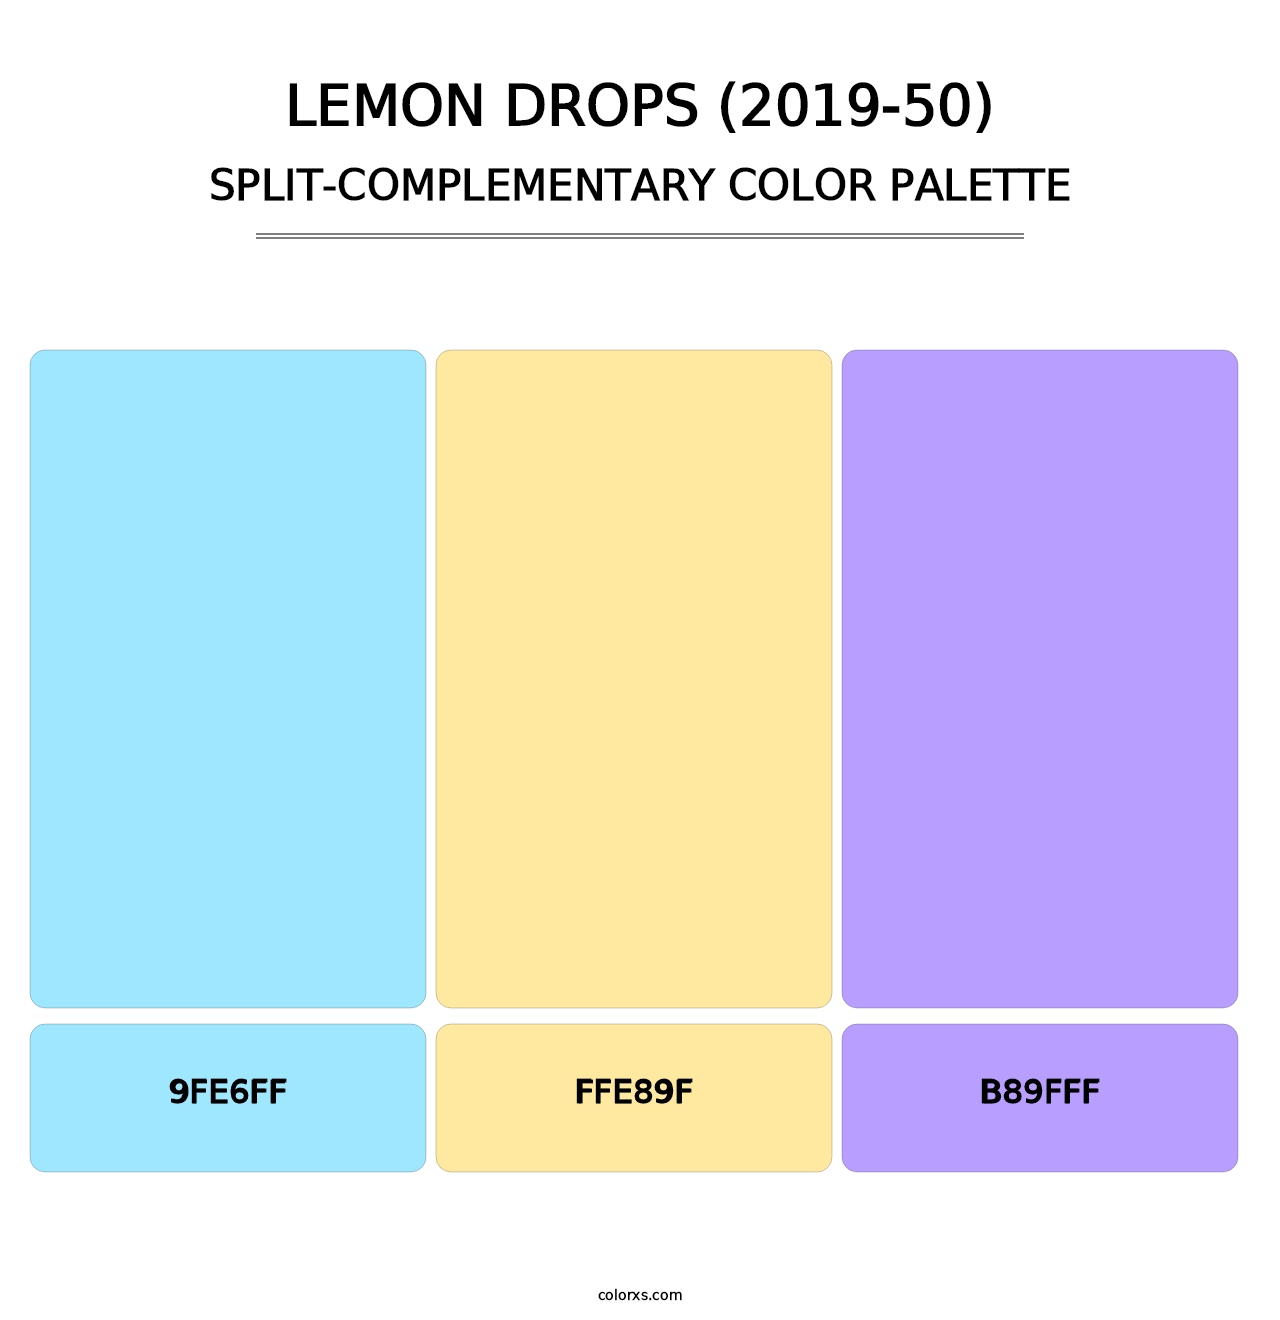 Lemon Drops (2019-50) - Split-Complementary Color Palette